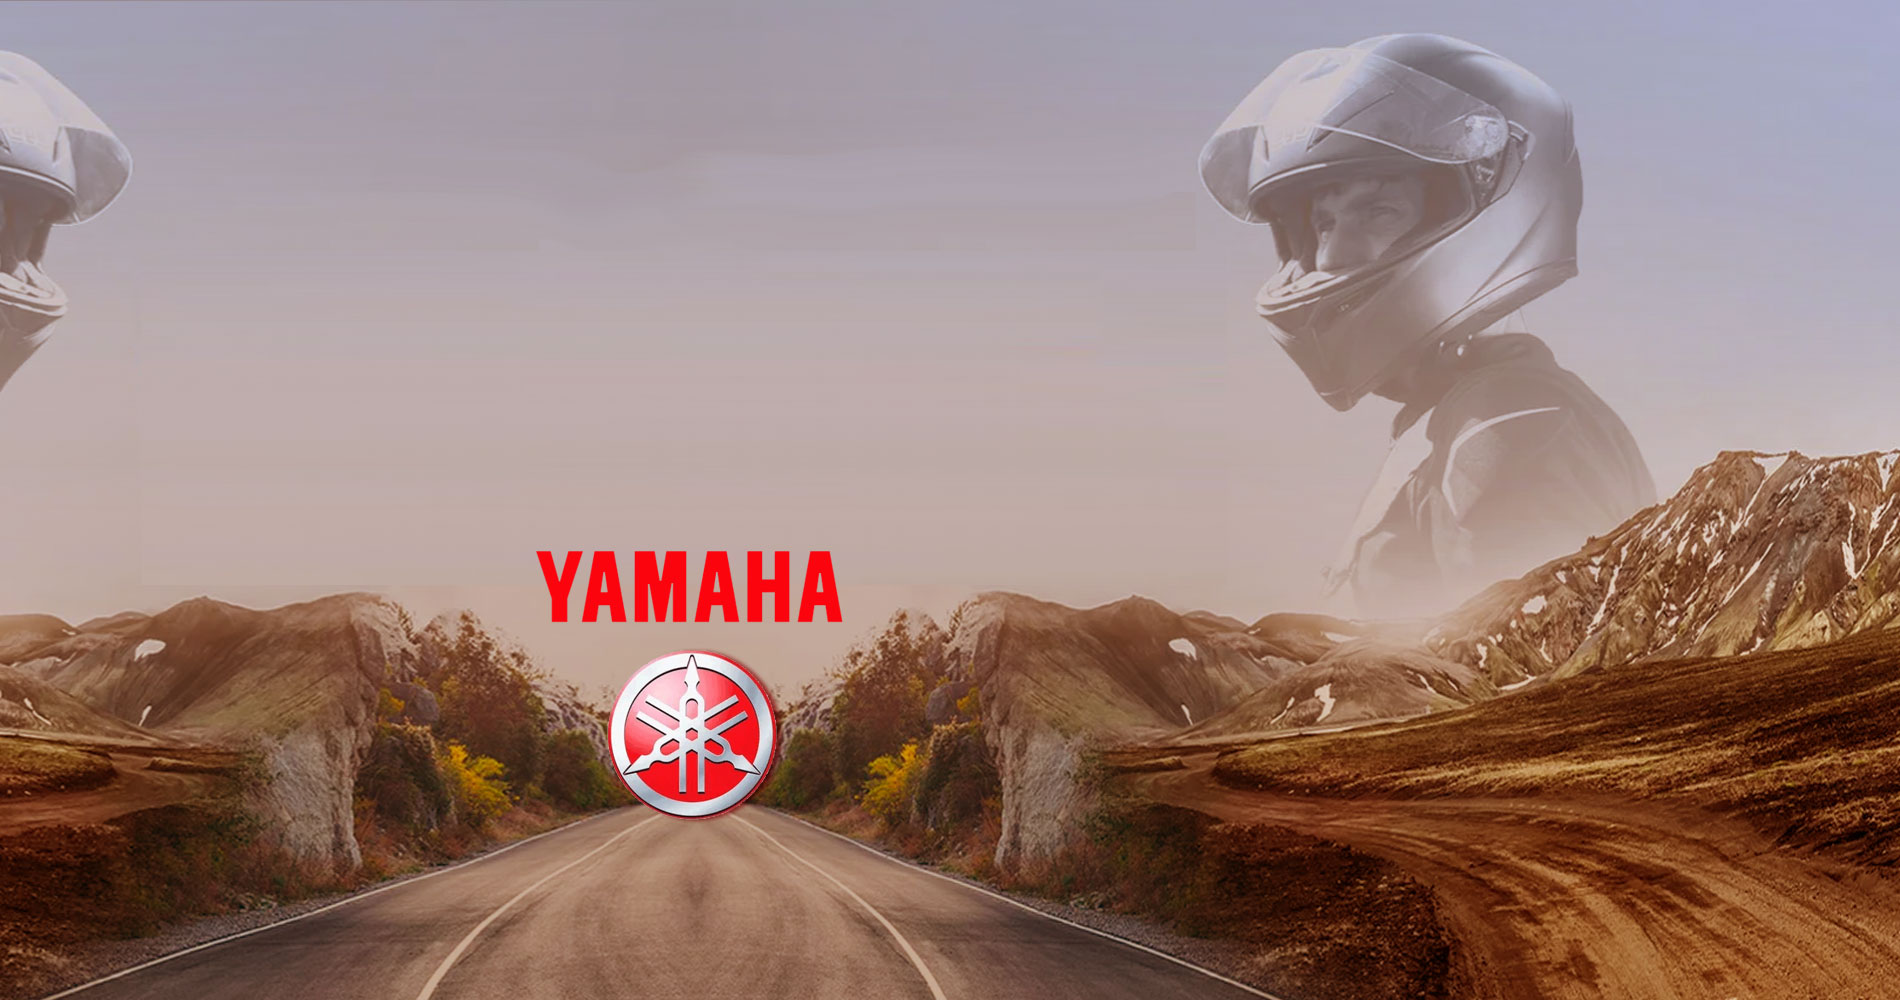 voir les constructeurs automobile Yamaha